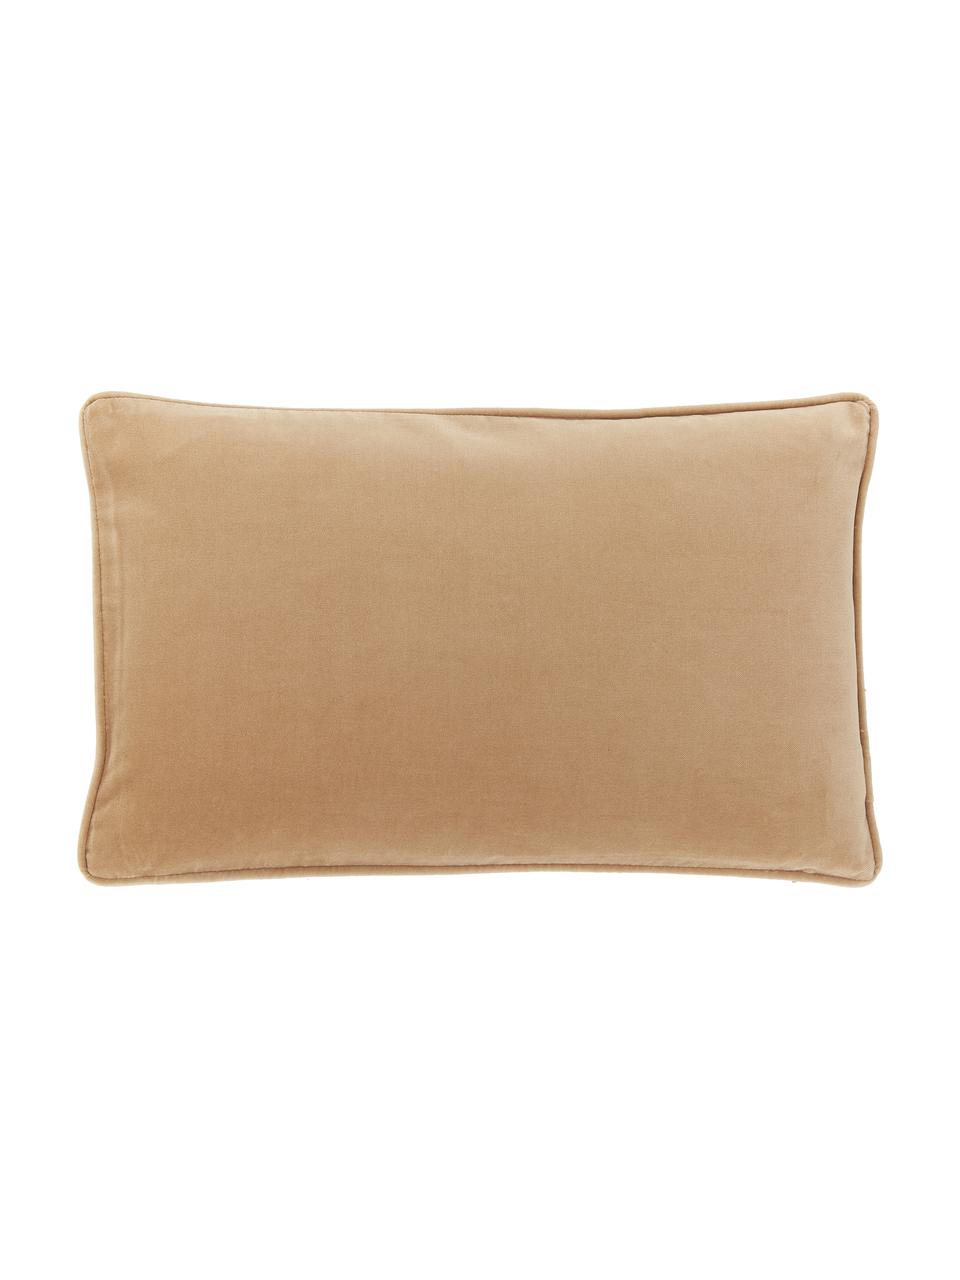 Poszewka na poduszkę z aksamitu Dana, 100% aksamit bawełniany, Jasny brązowy, S 30 x D 50 cm